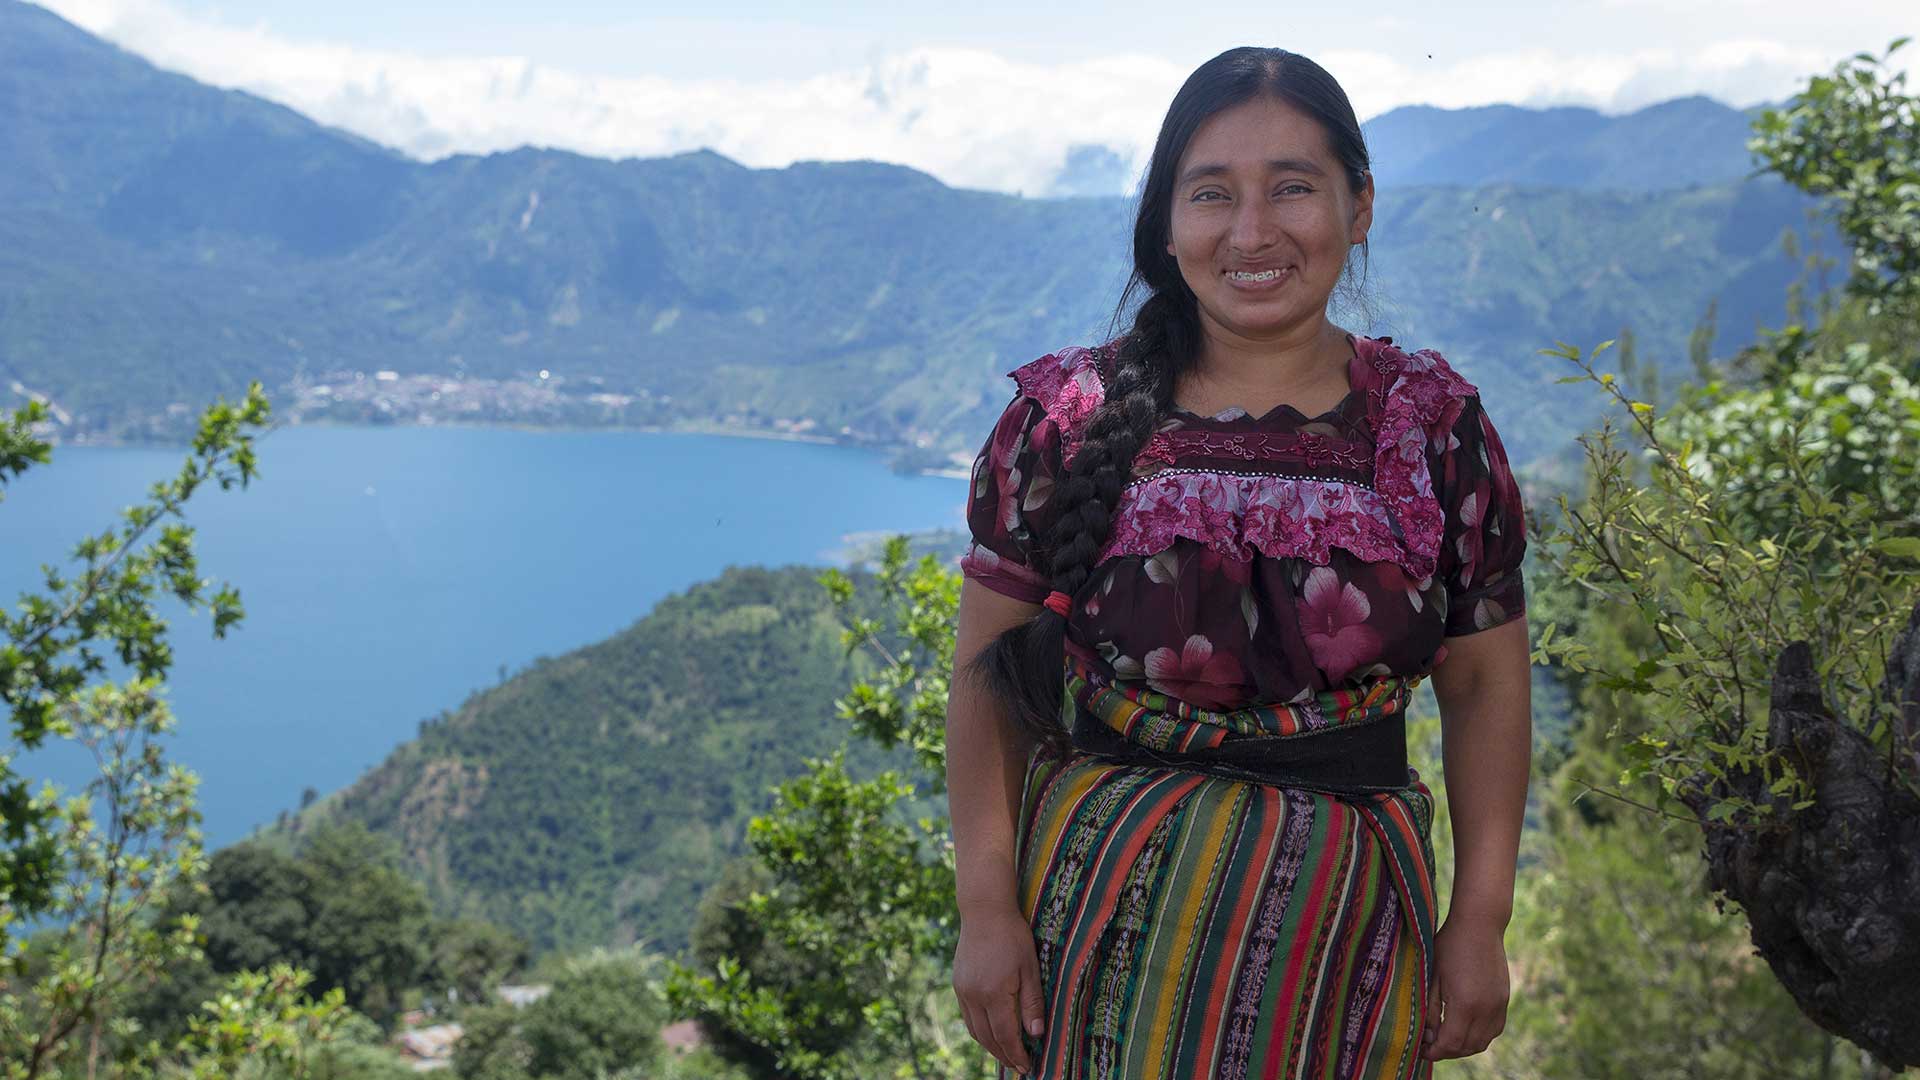 Cruz, 28, tillverkar fairtrade-smycken åt Wakami i Guatemala